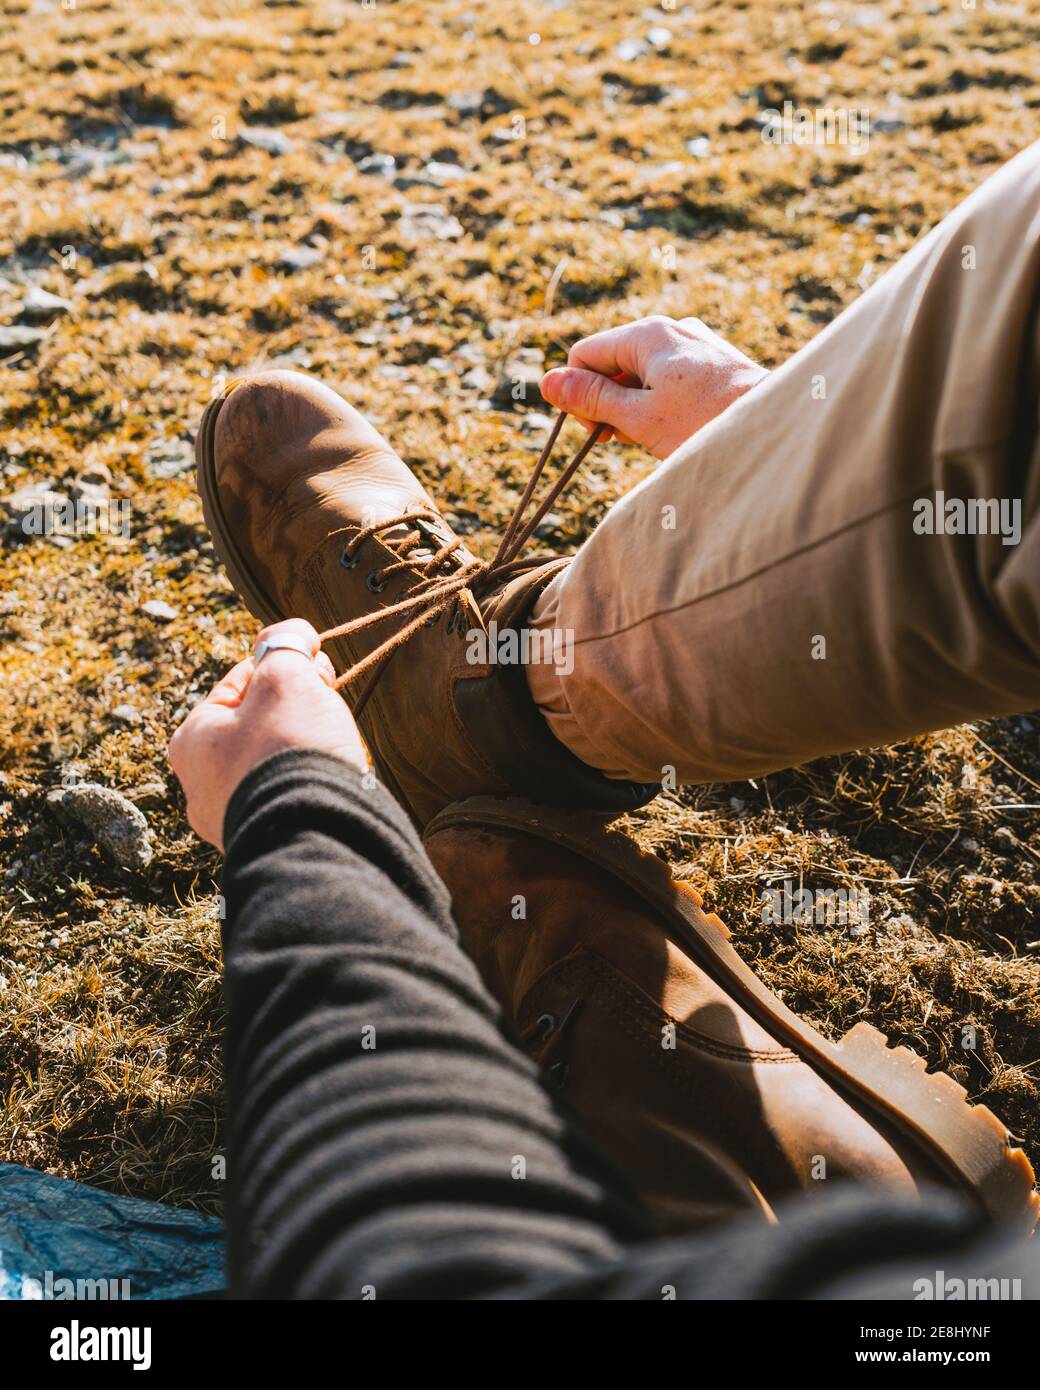 De dessus de crop anonyme homme randonneur dans une tenue élégante attacher les lacets des bottes en étant assis sur un sol herbeux jour ensoleillé Banque D'Images